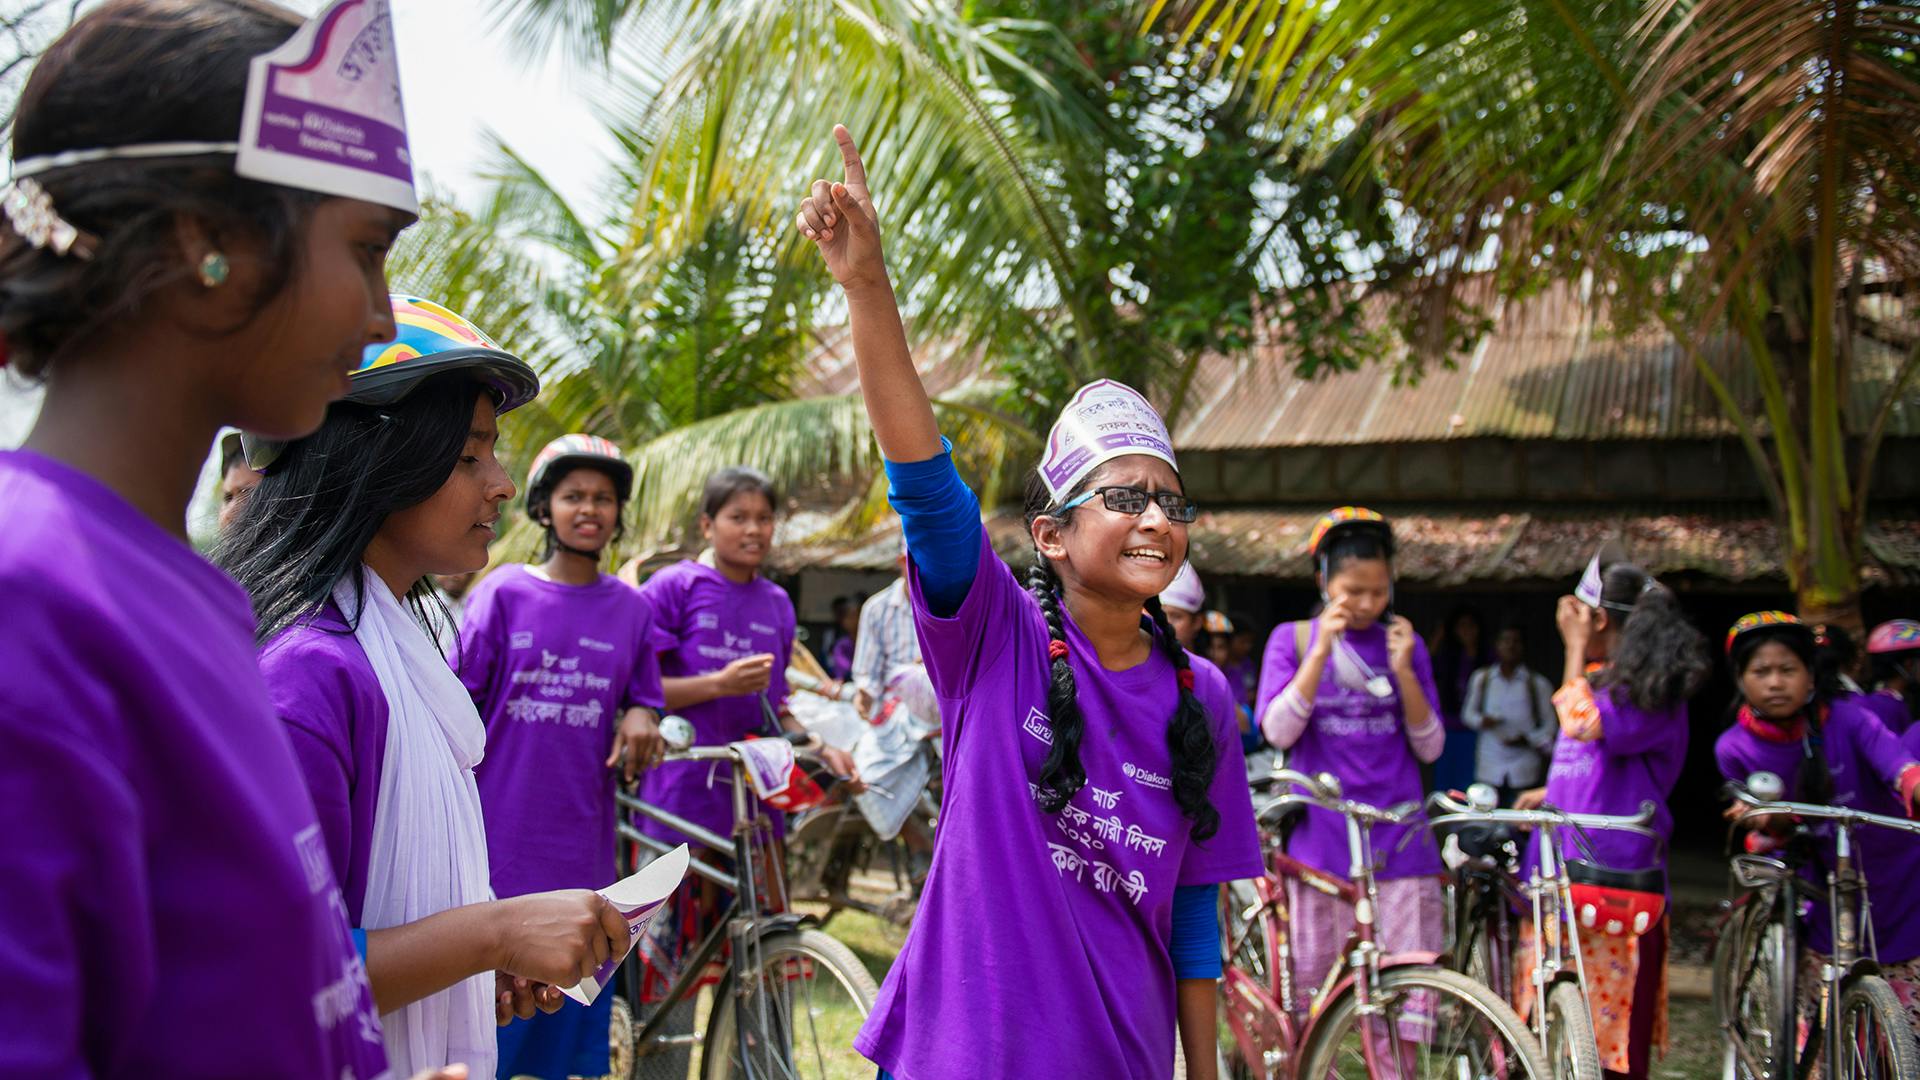 En flicka står mitt i en grupp av andra flickor med cyklar och pratar och gestikulerar med handen. Alla flickor har likadana lila t-shirts på sig.